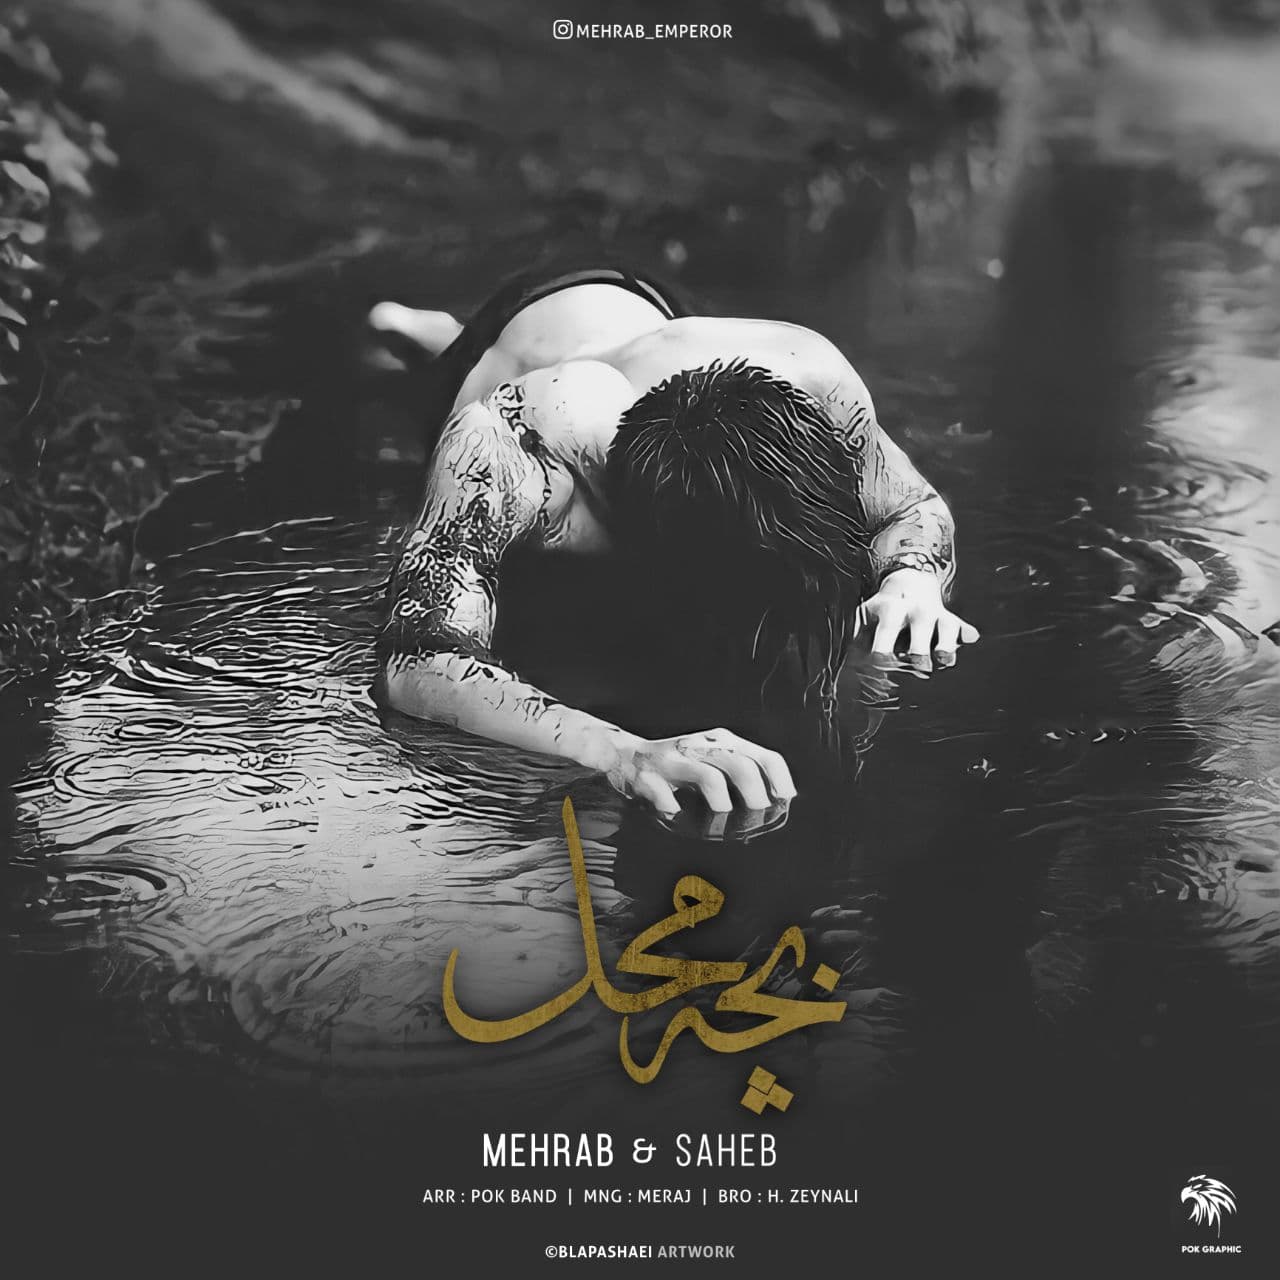  دانلود آهنگ جدید مهراب و صاحب - بچه محل | Download New Music By Mehrab & Saheb -  Bache Mahal